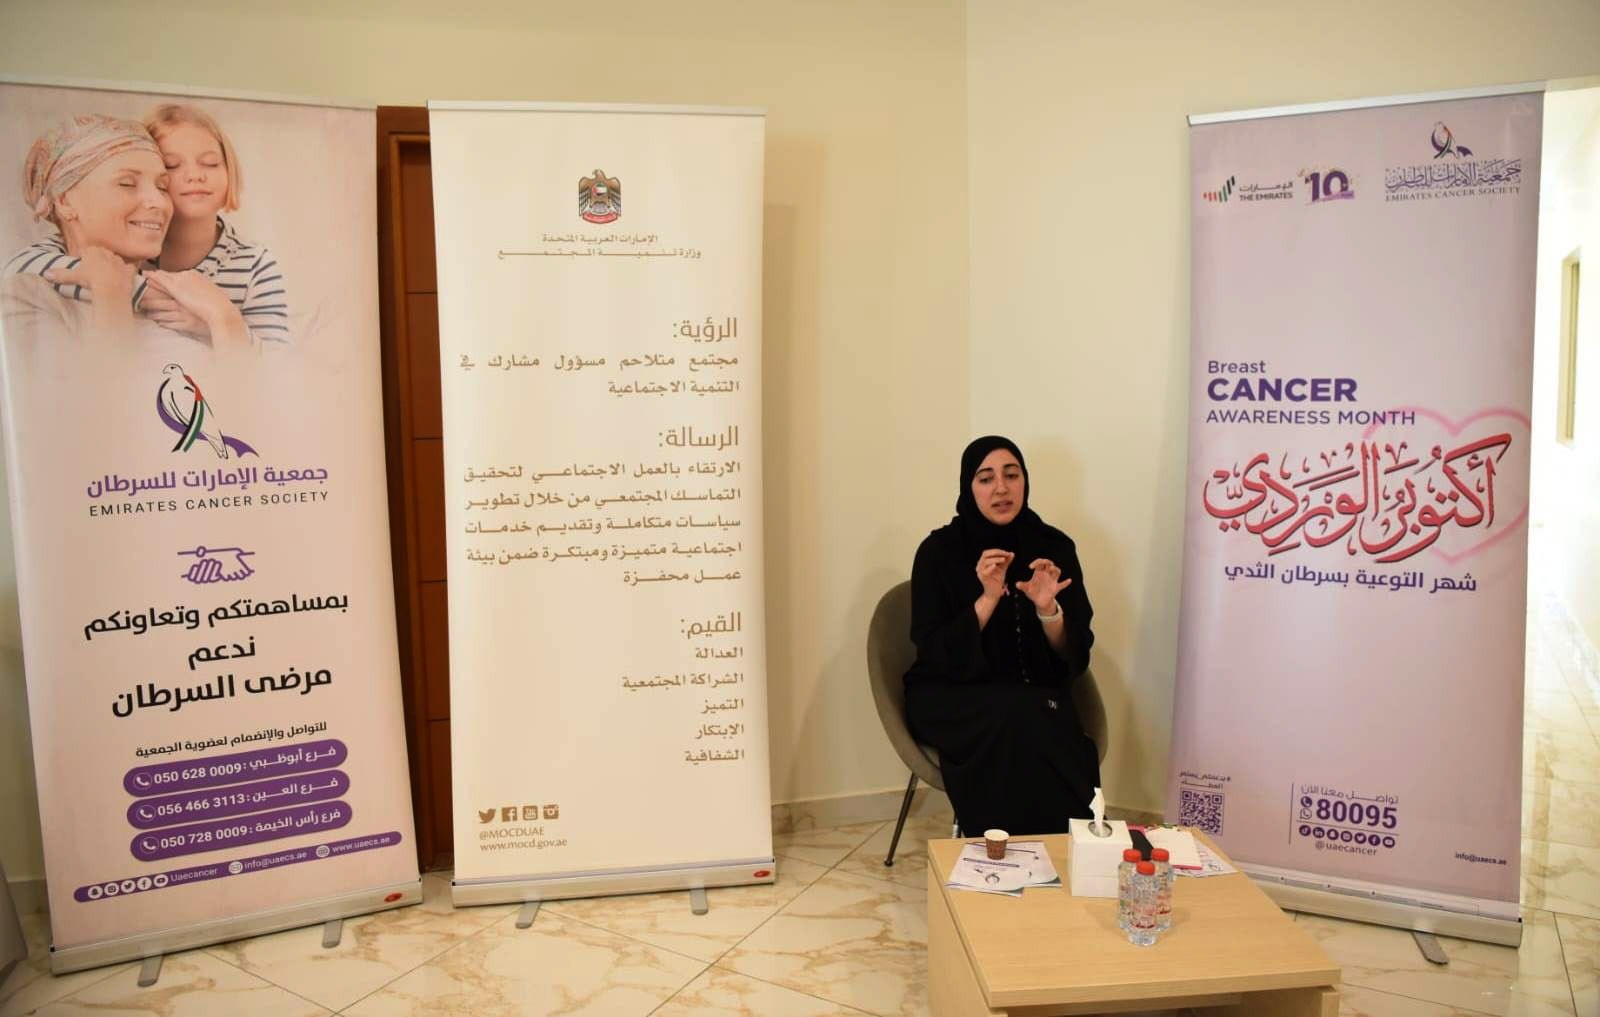   وزارة تنمية المجتمع وجمعية الإمارات للسرطان تنظمان  محاضرة حول سرطان الثدي بعنوان "بادري لا تترددي"   